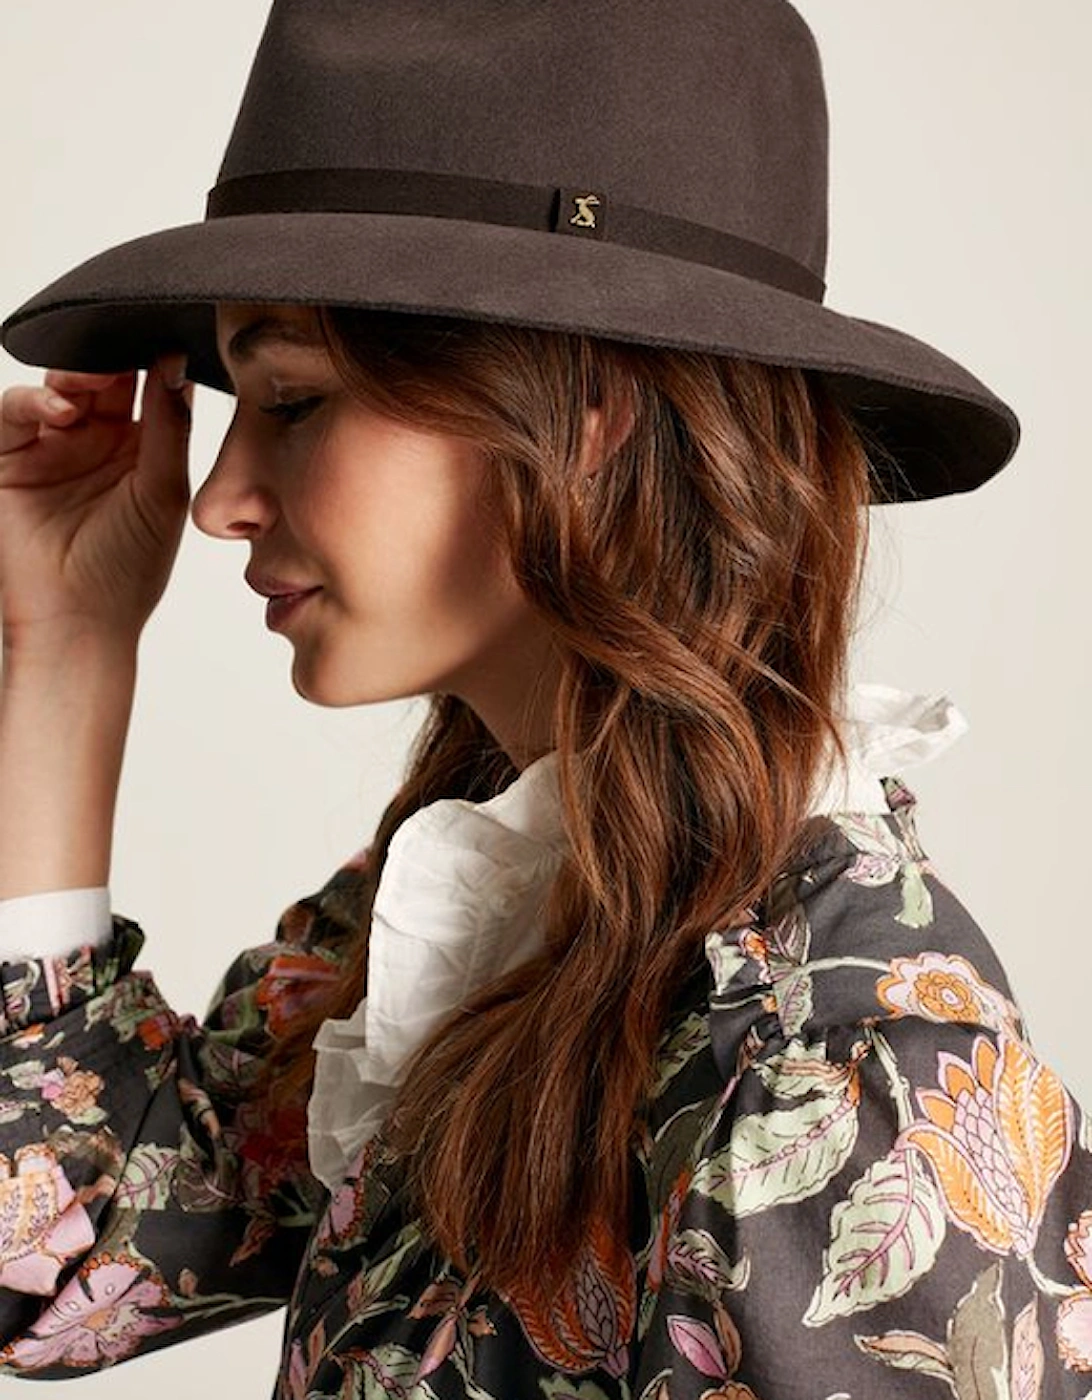 Women's Hazleton Soft Fedora Hat Dark Brown